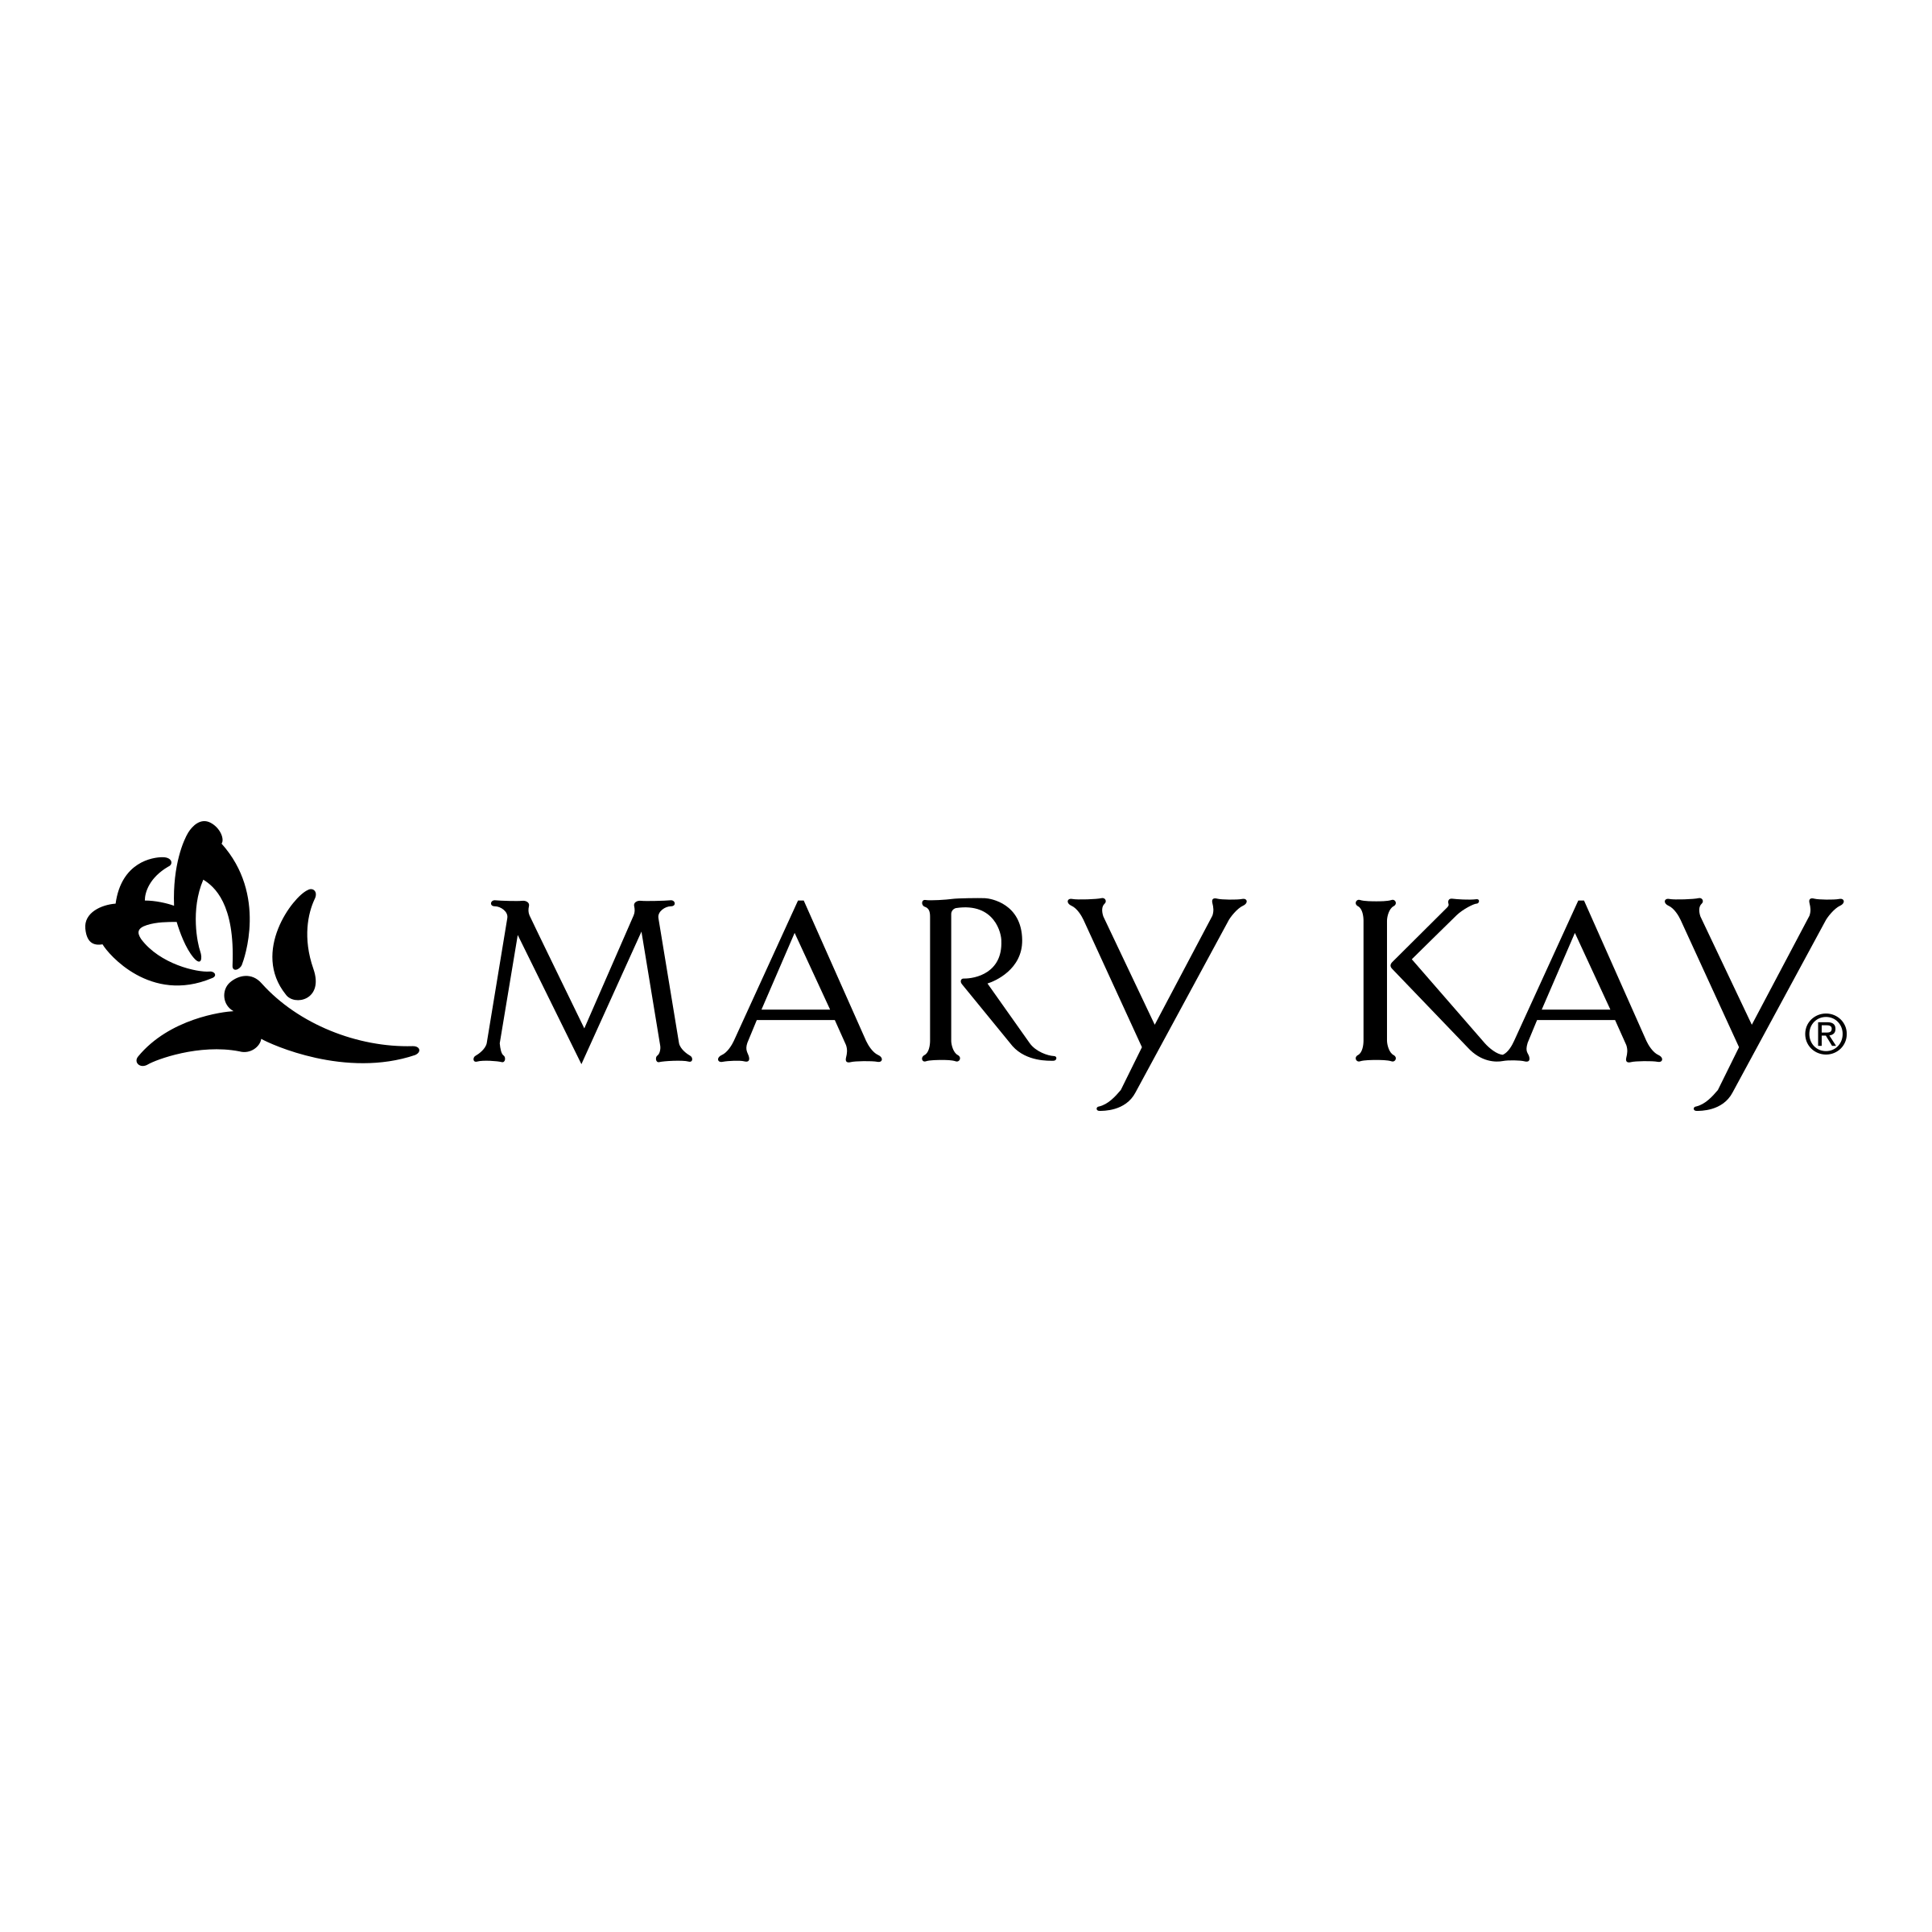 Mary Kay Logo - Mary Kay logo